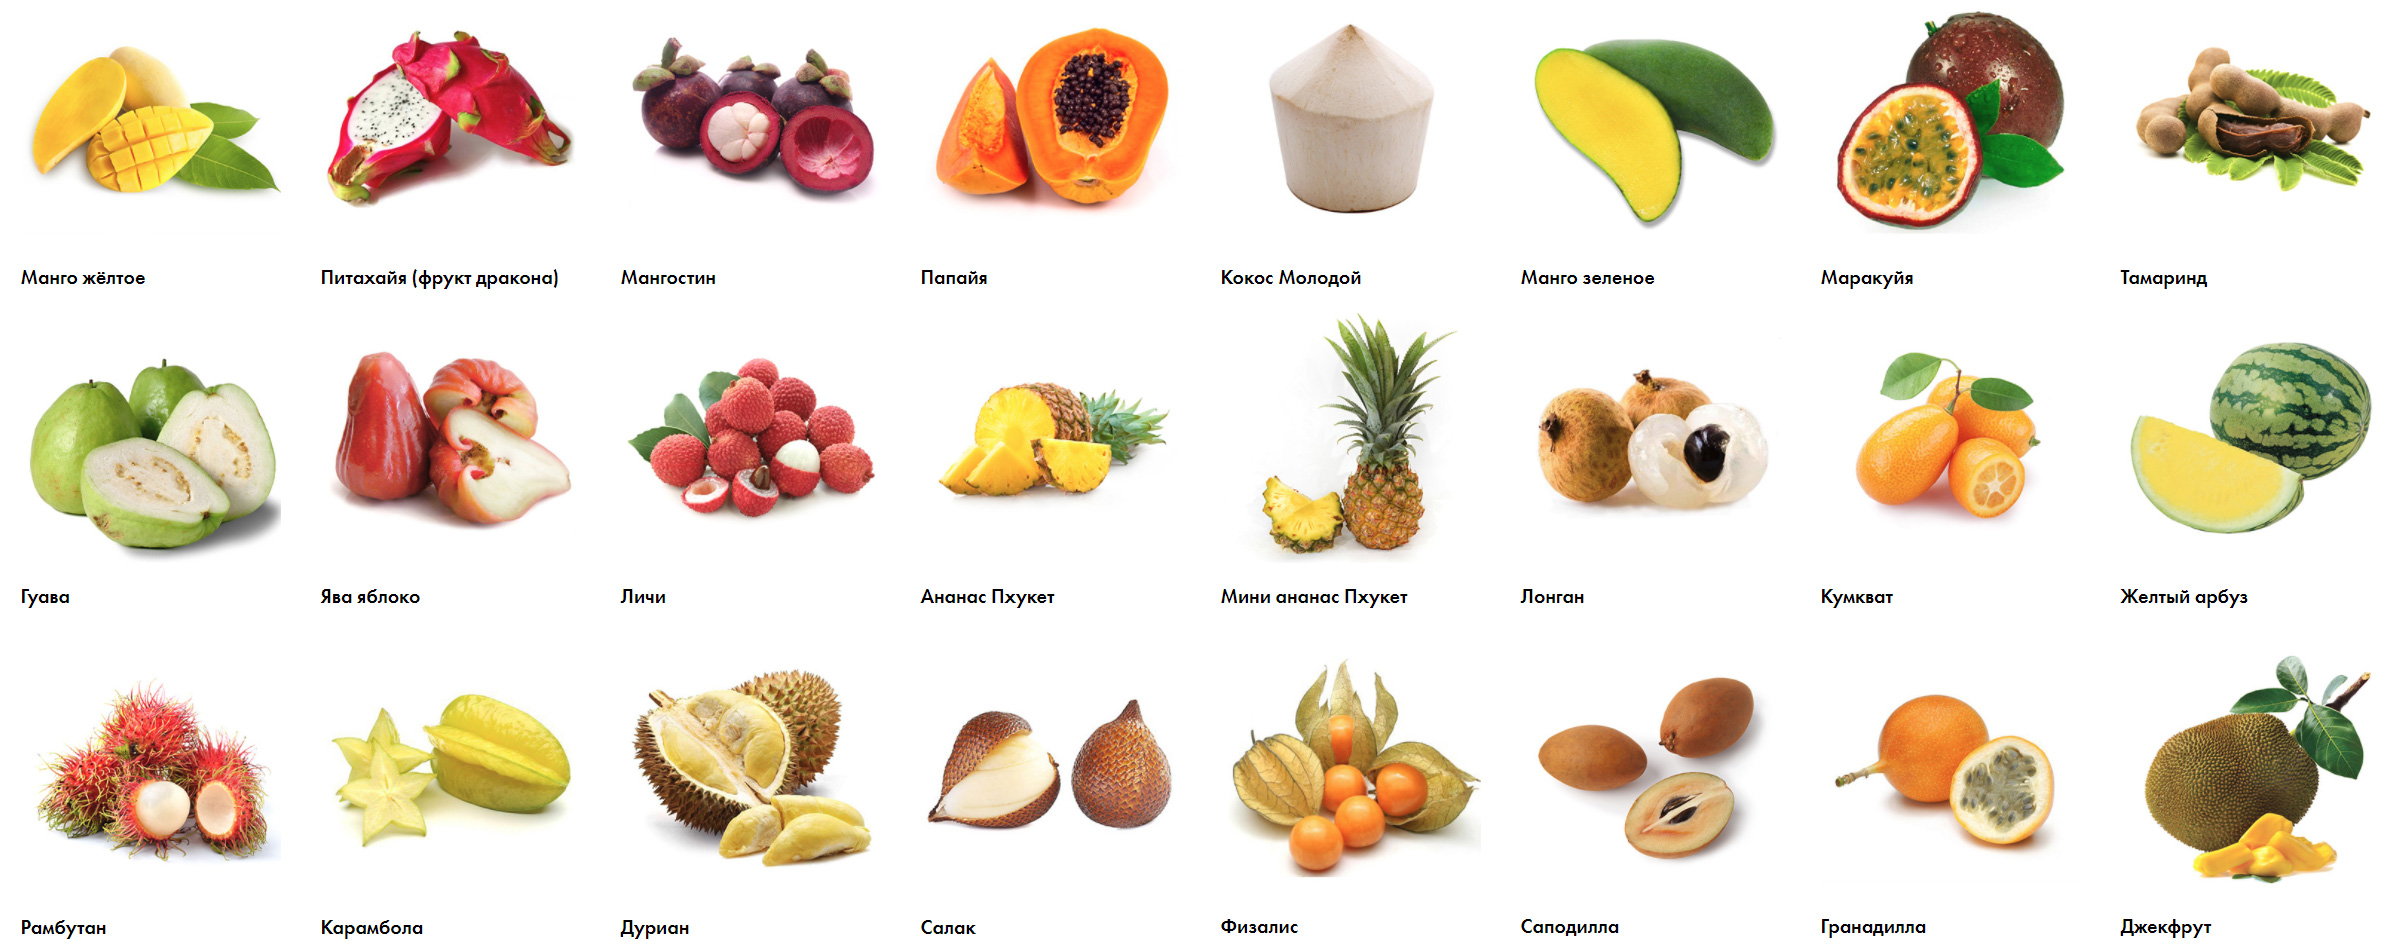 Экзотические фрукты: фото, название, описание